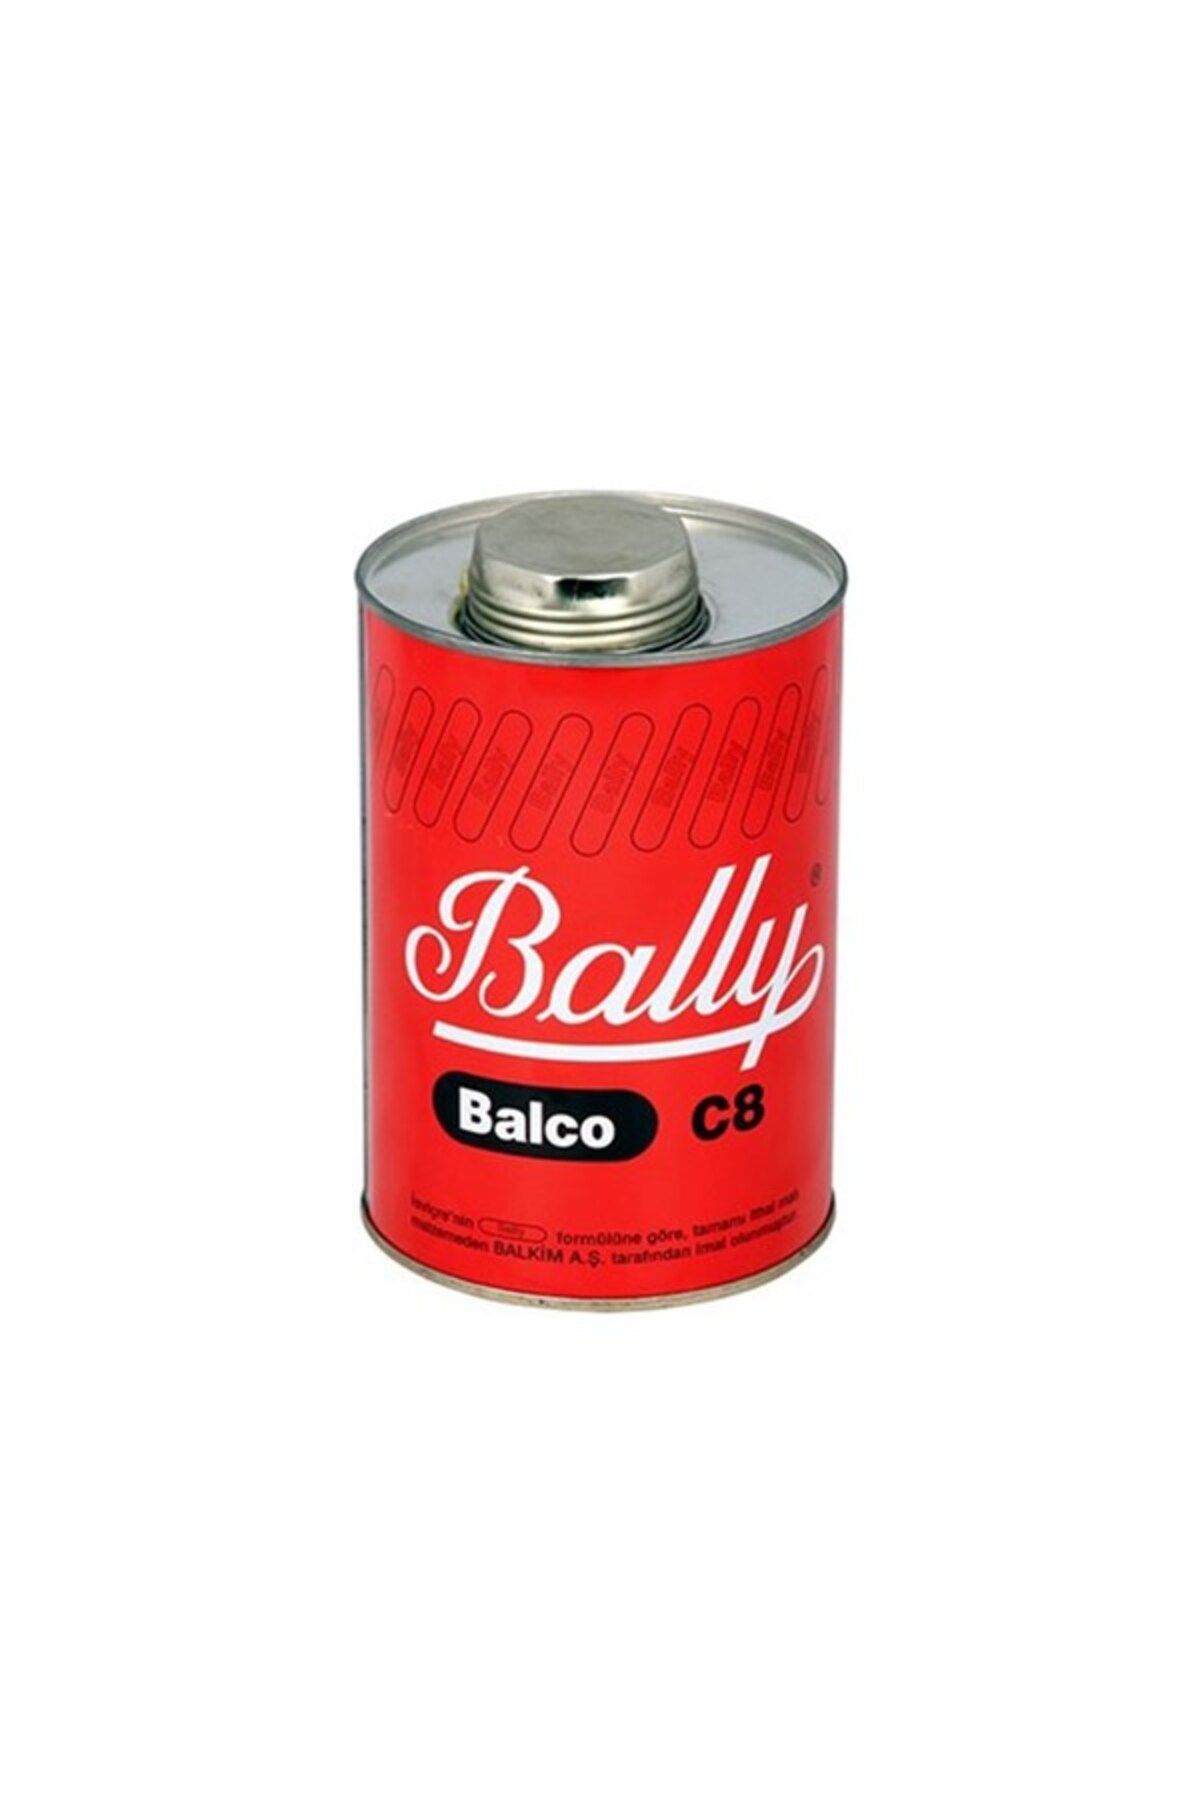 Bally C8 Yapıştırıcı 850gr Kırmızı